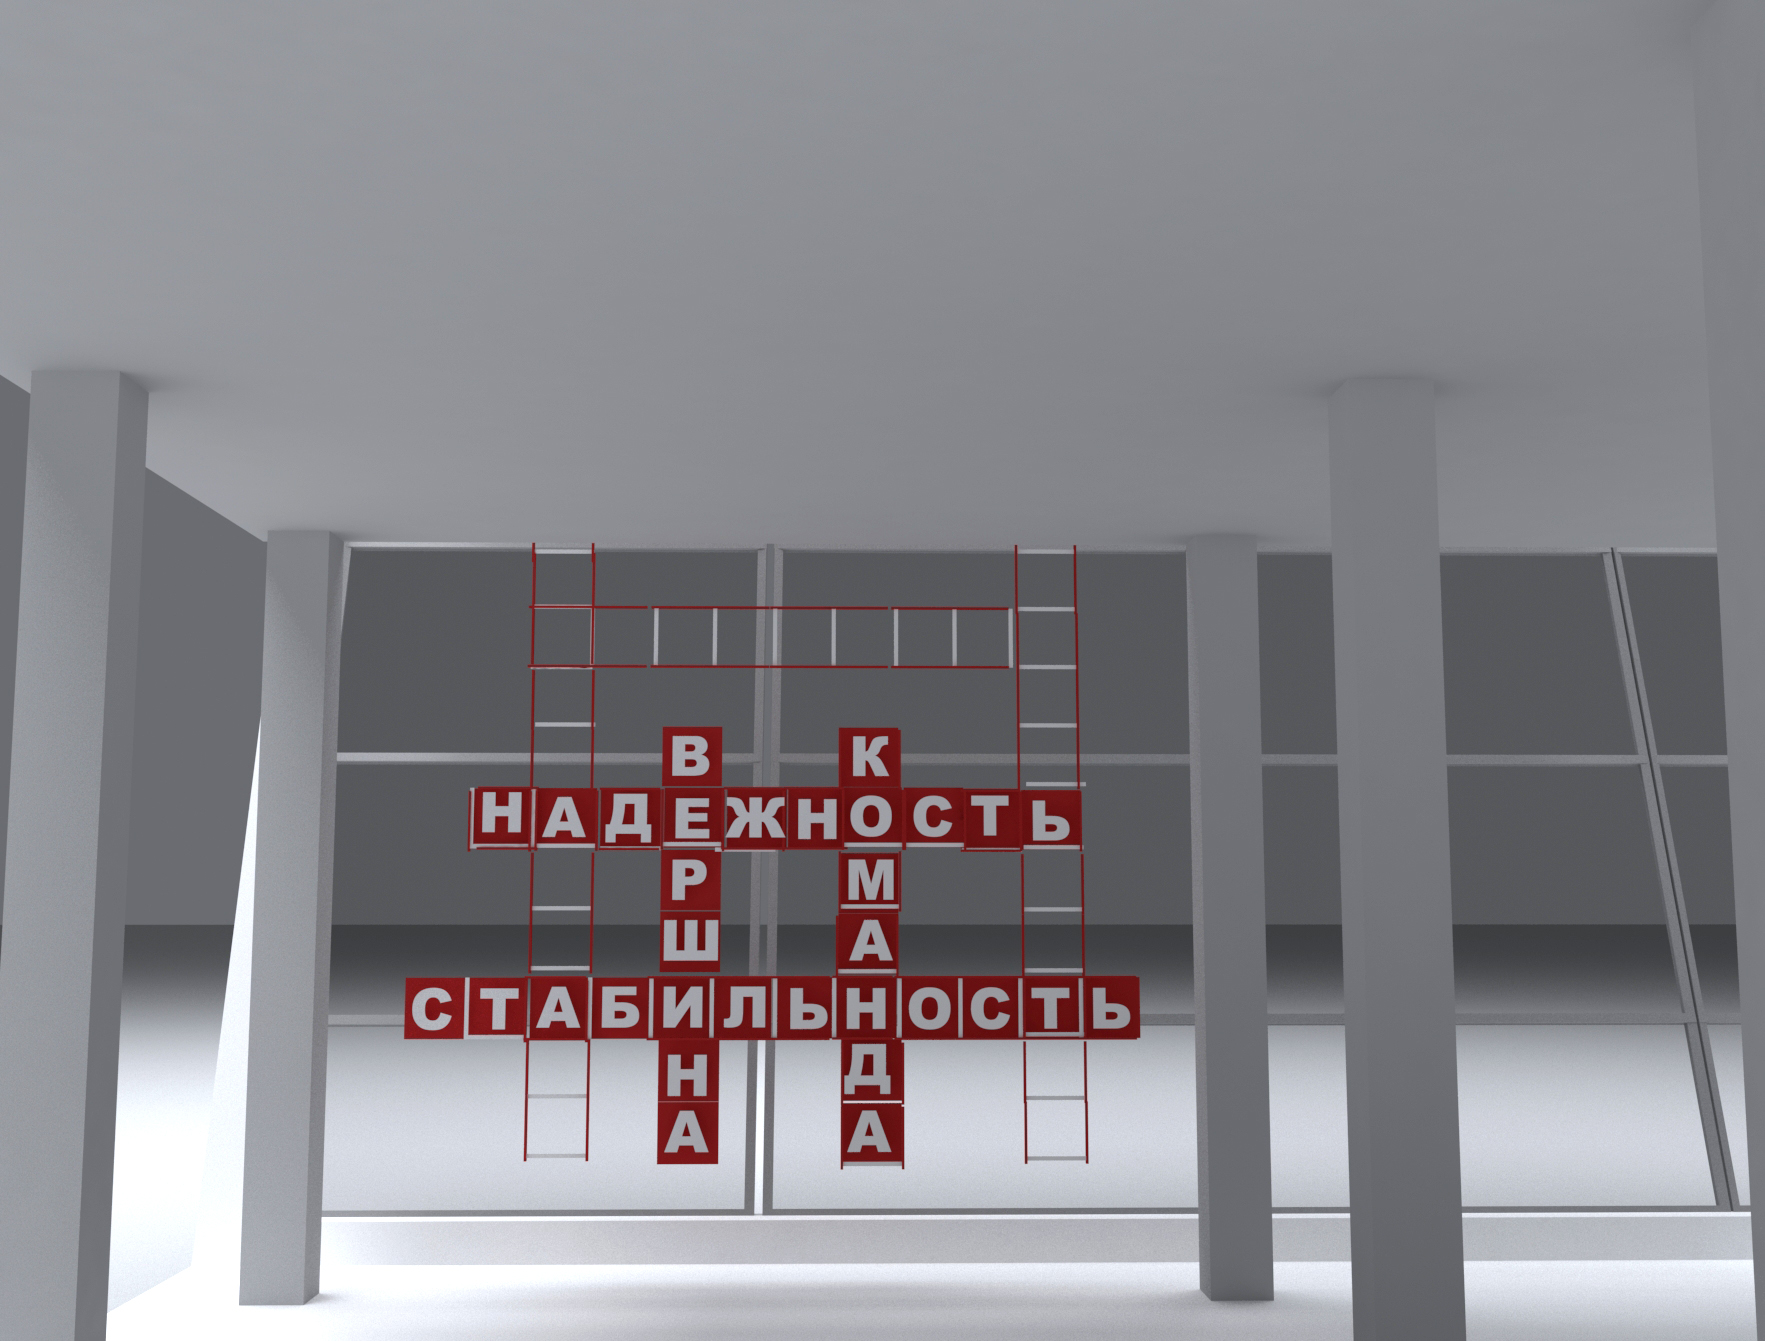 Паблик-арт инсталляция художника Марины Звягинцевой «Лестница вверх» в здании «Академии ДКС» в Твери